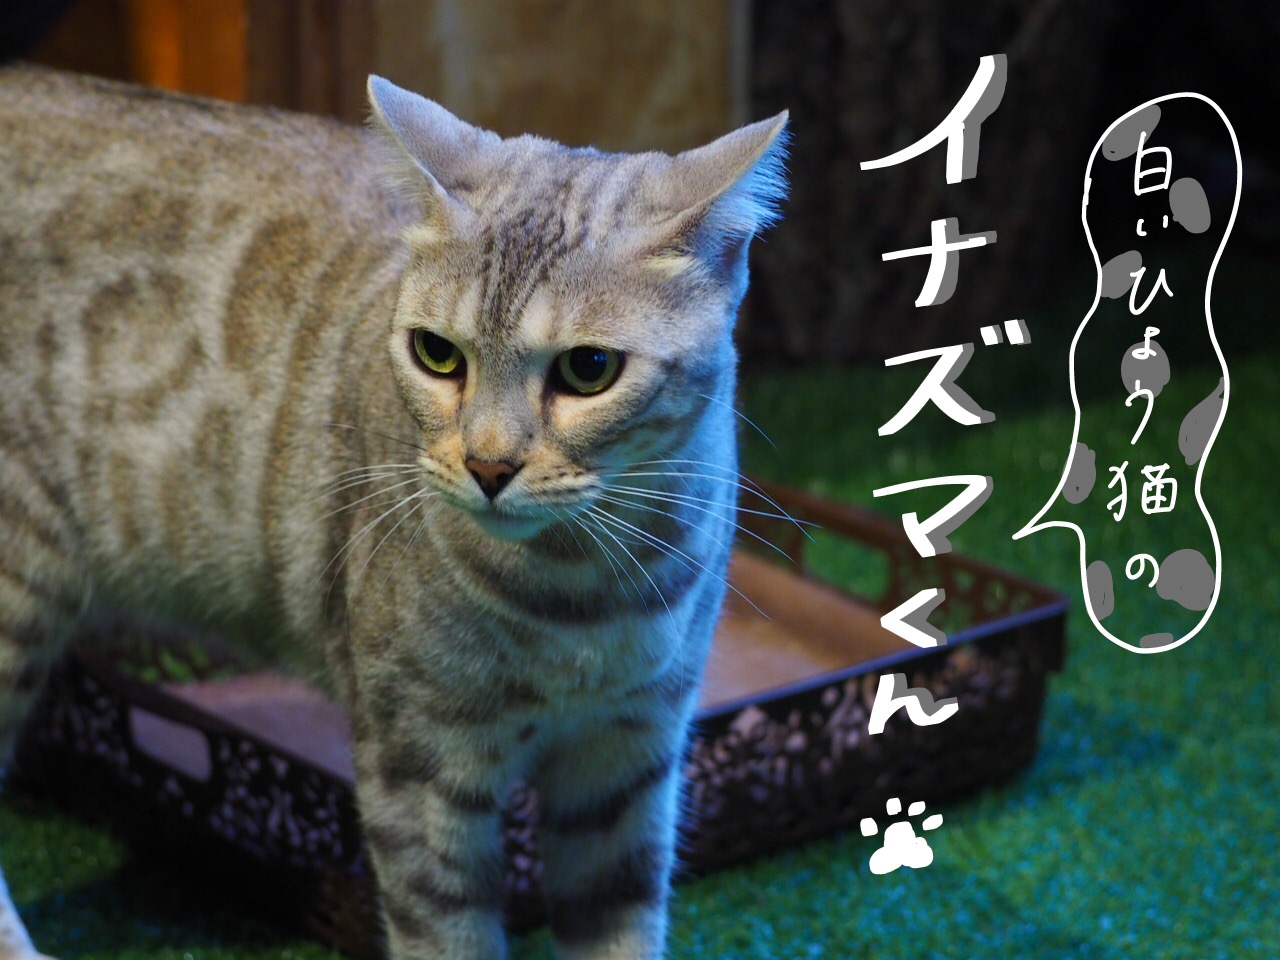 嚴島ひょう猫の森 宮島にヒョウ猫カフェ登場 猫好きにはたまらない空間